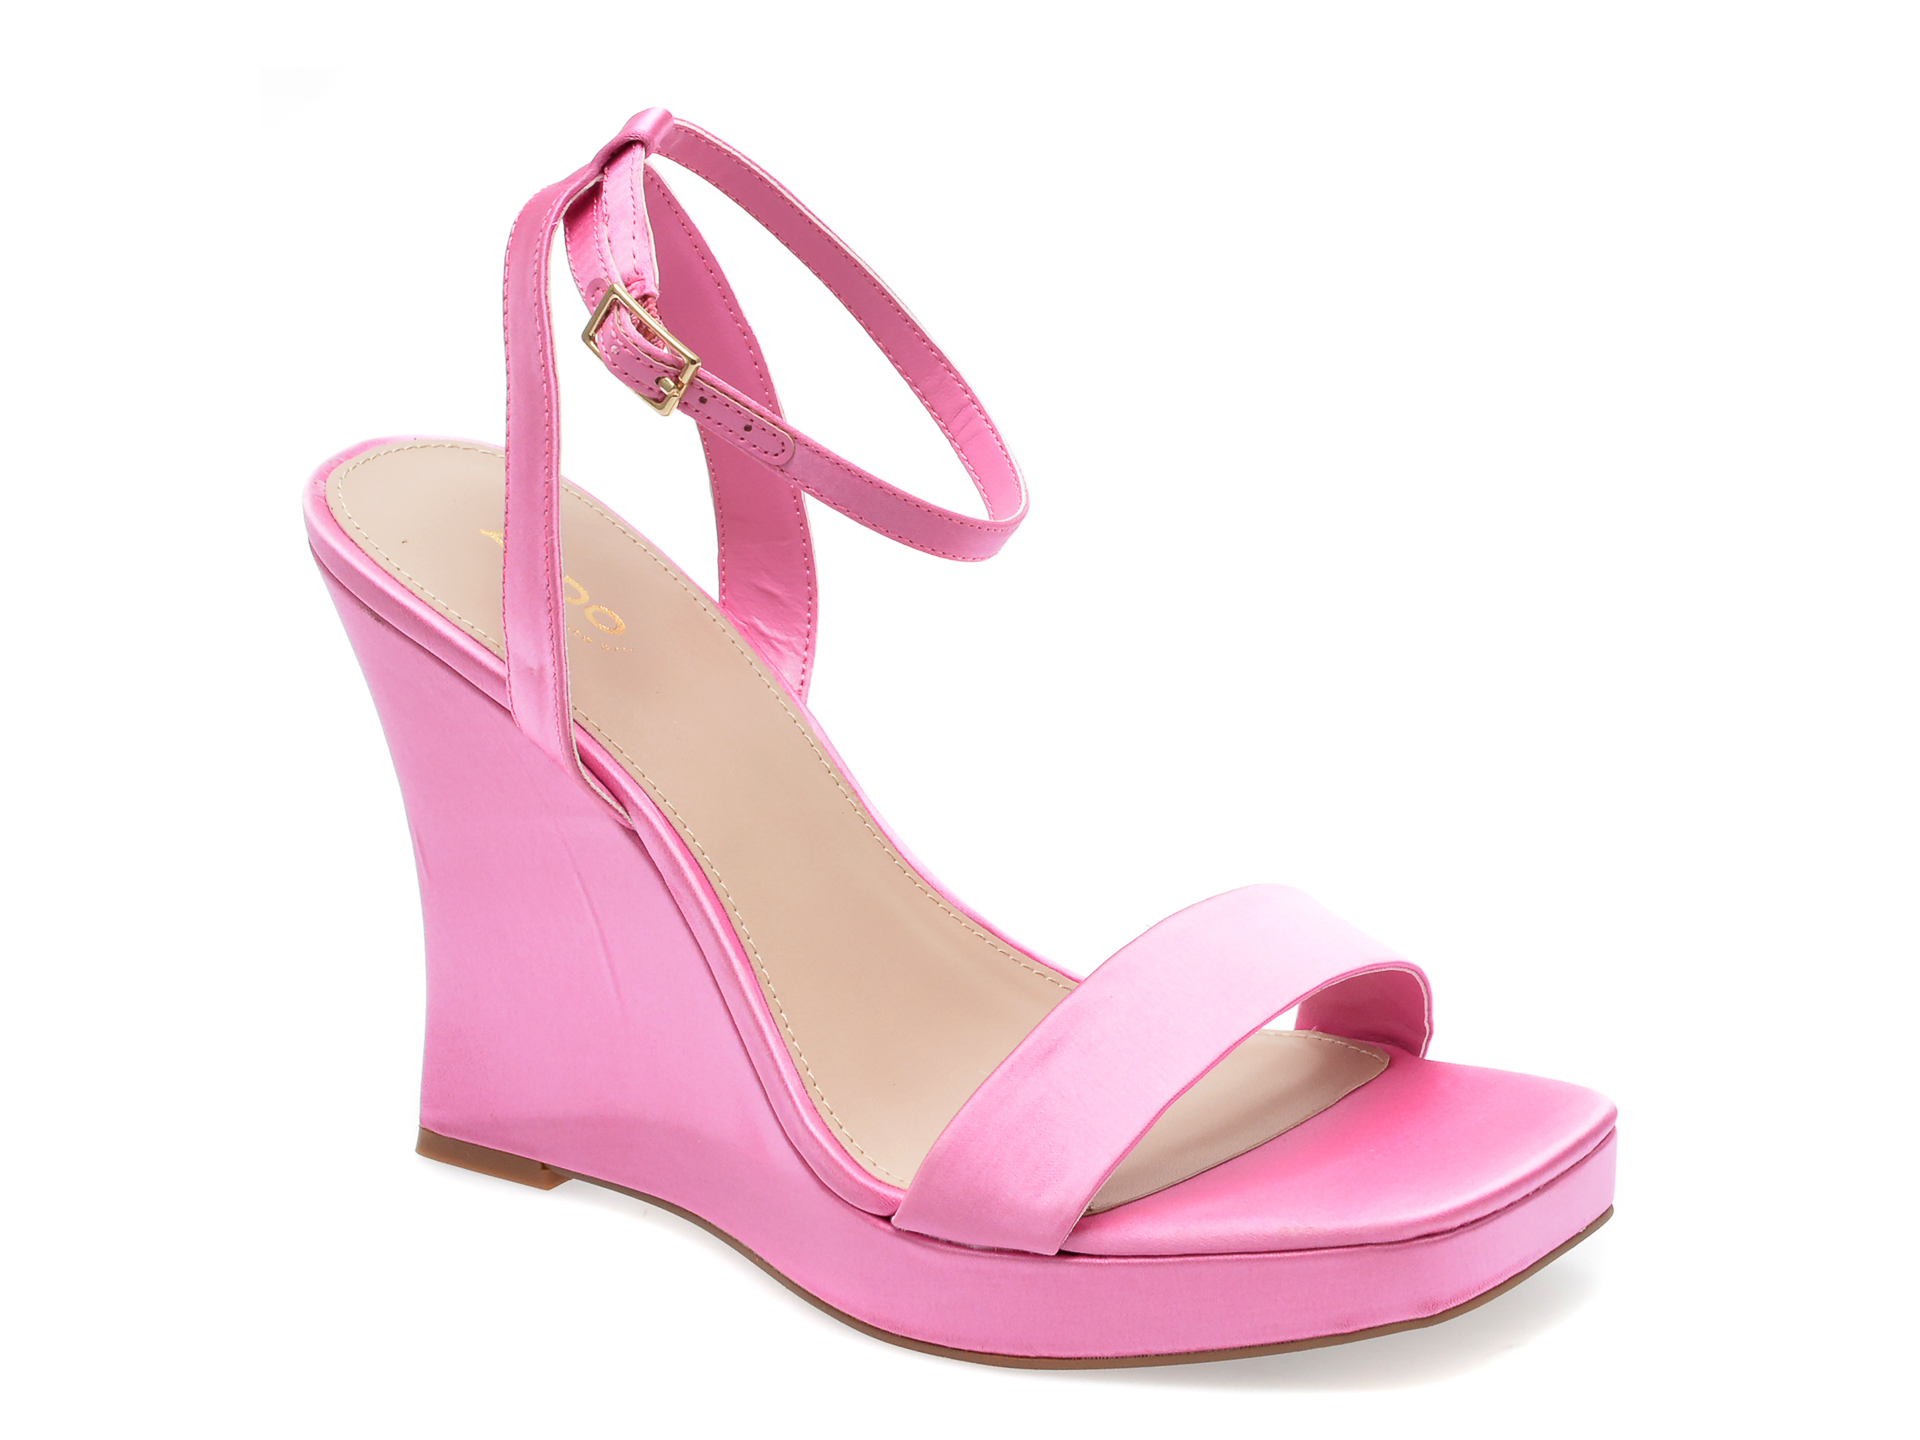 Sandale ALDO roz, NUALA660, din material textil femei 2023-09-23